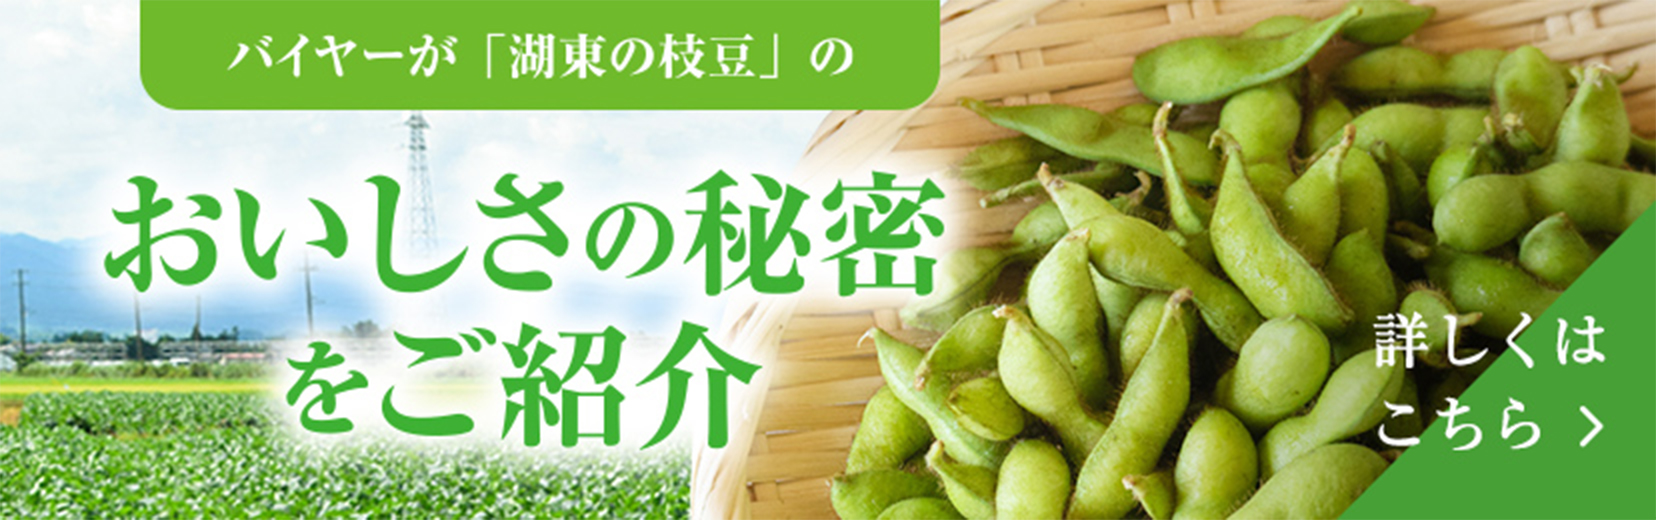 秋田県産湖東の枝豆 おすすめレシピ